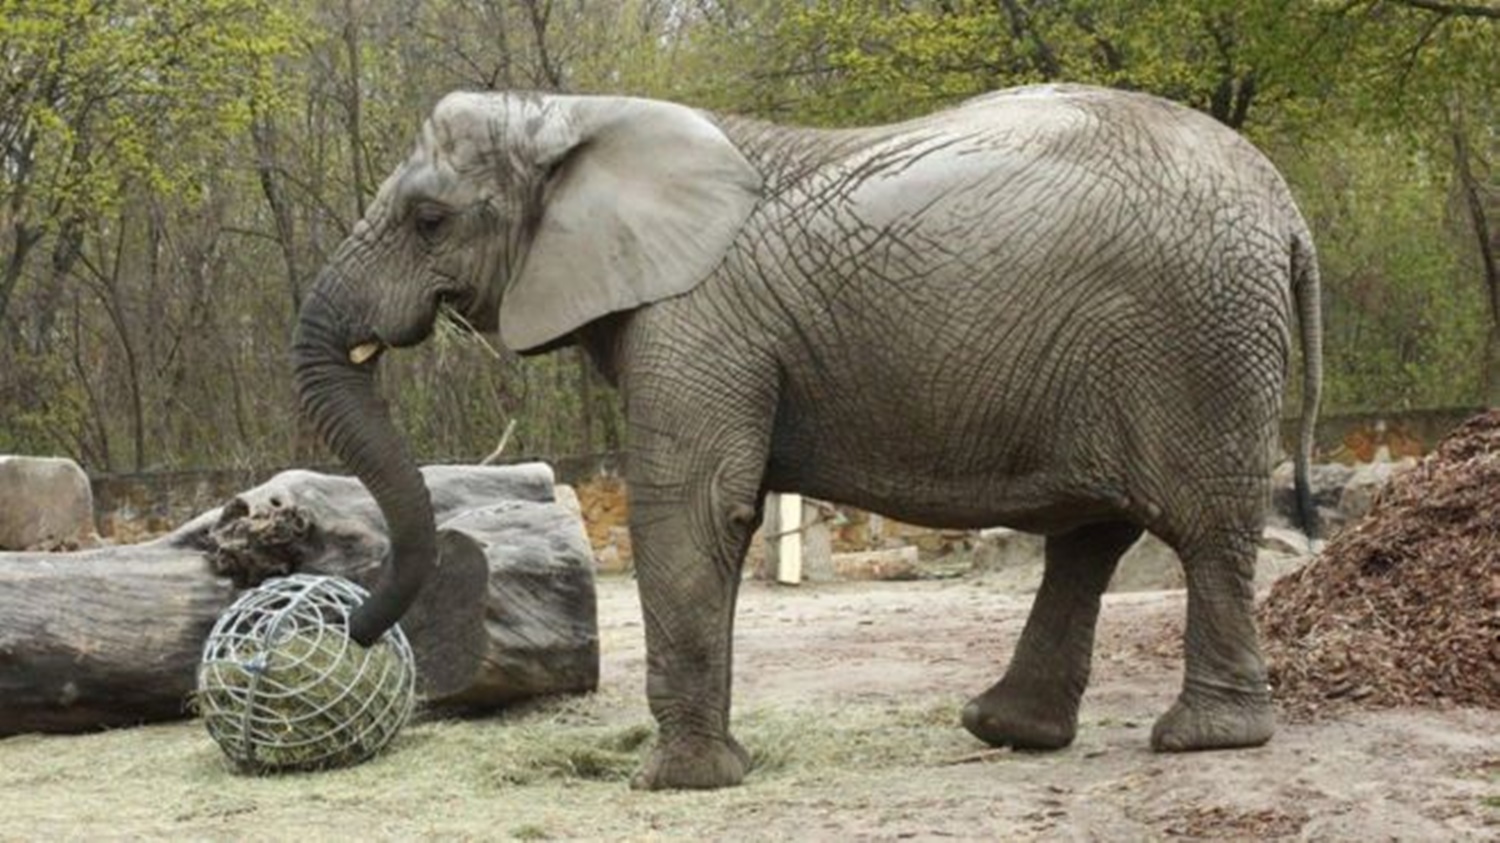 Soluția pentru elefanții stresați! Droguri administrate prin trompă la ZOO Varșovia